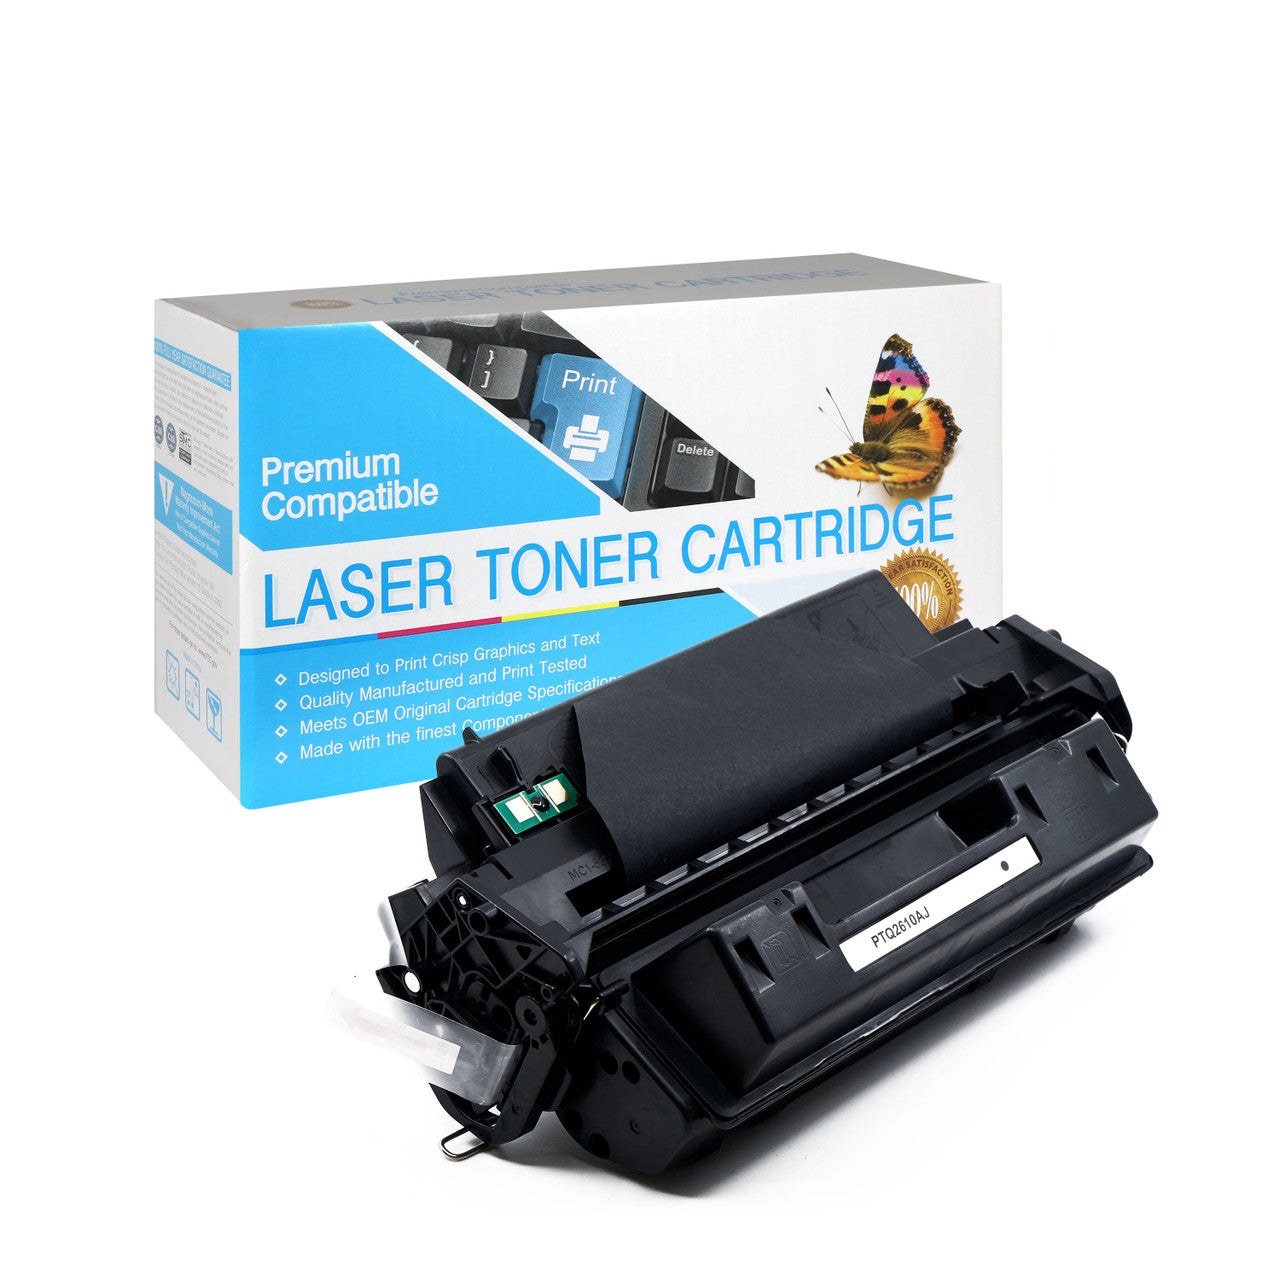 Compatible HP Q2610A Toner Cartridge (Black) by SuppliesOutlet